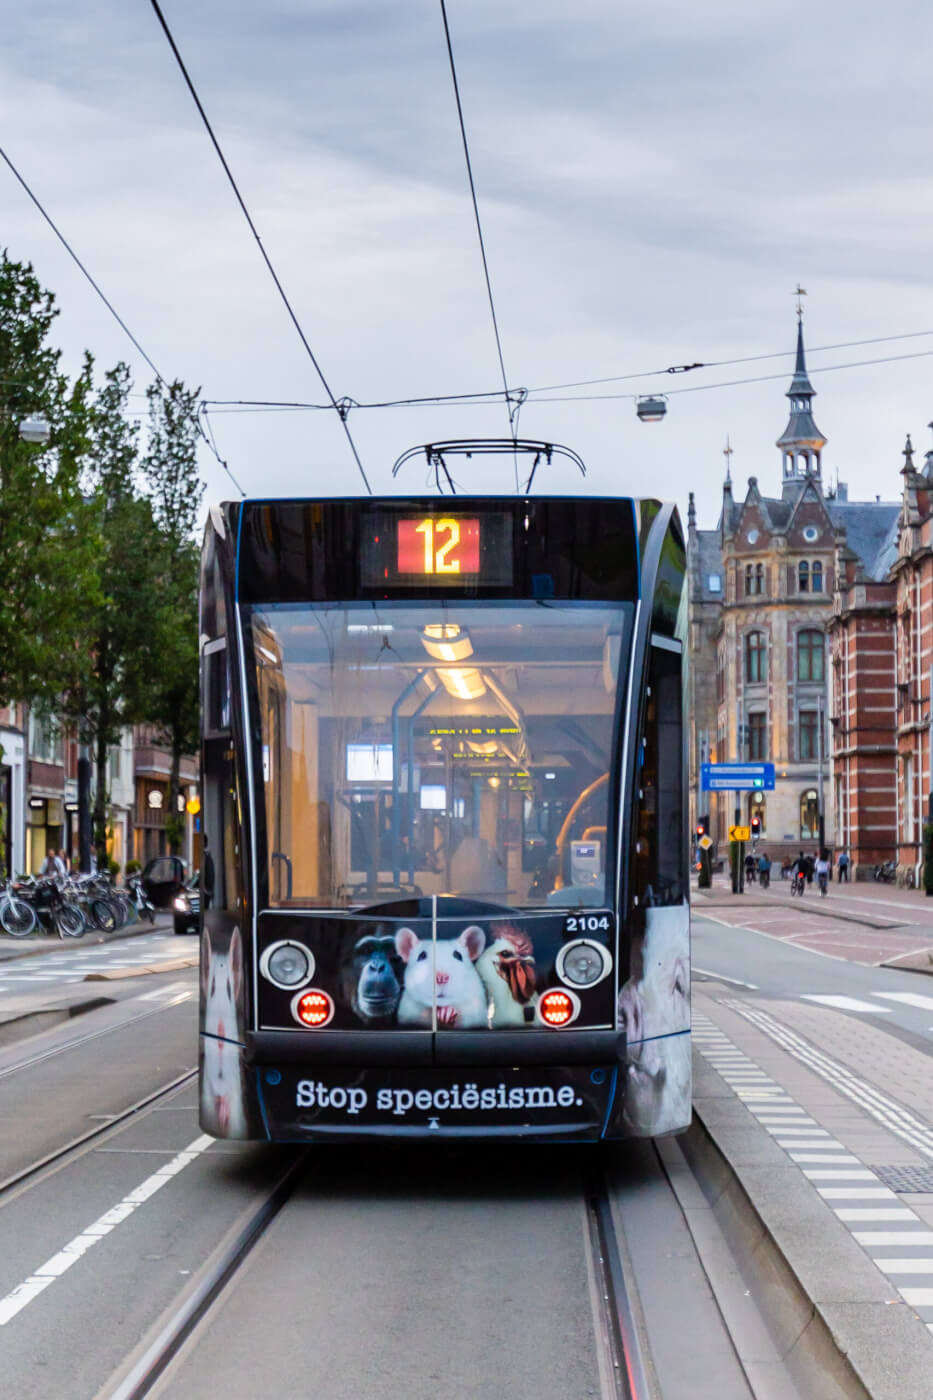 Amsterdamse trams krijgen diervriendelijke nieuwe look met ‘Stop speciësisme’ PETA-wikkel